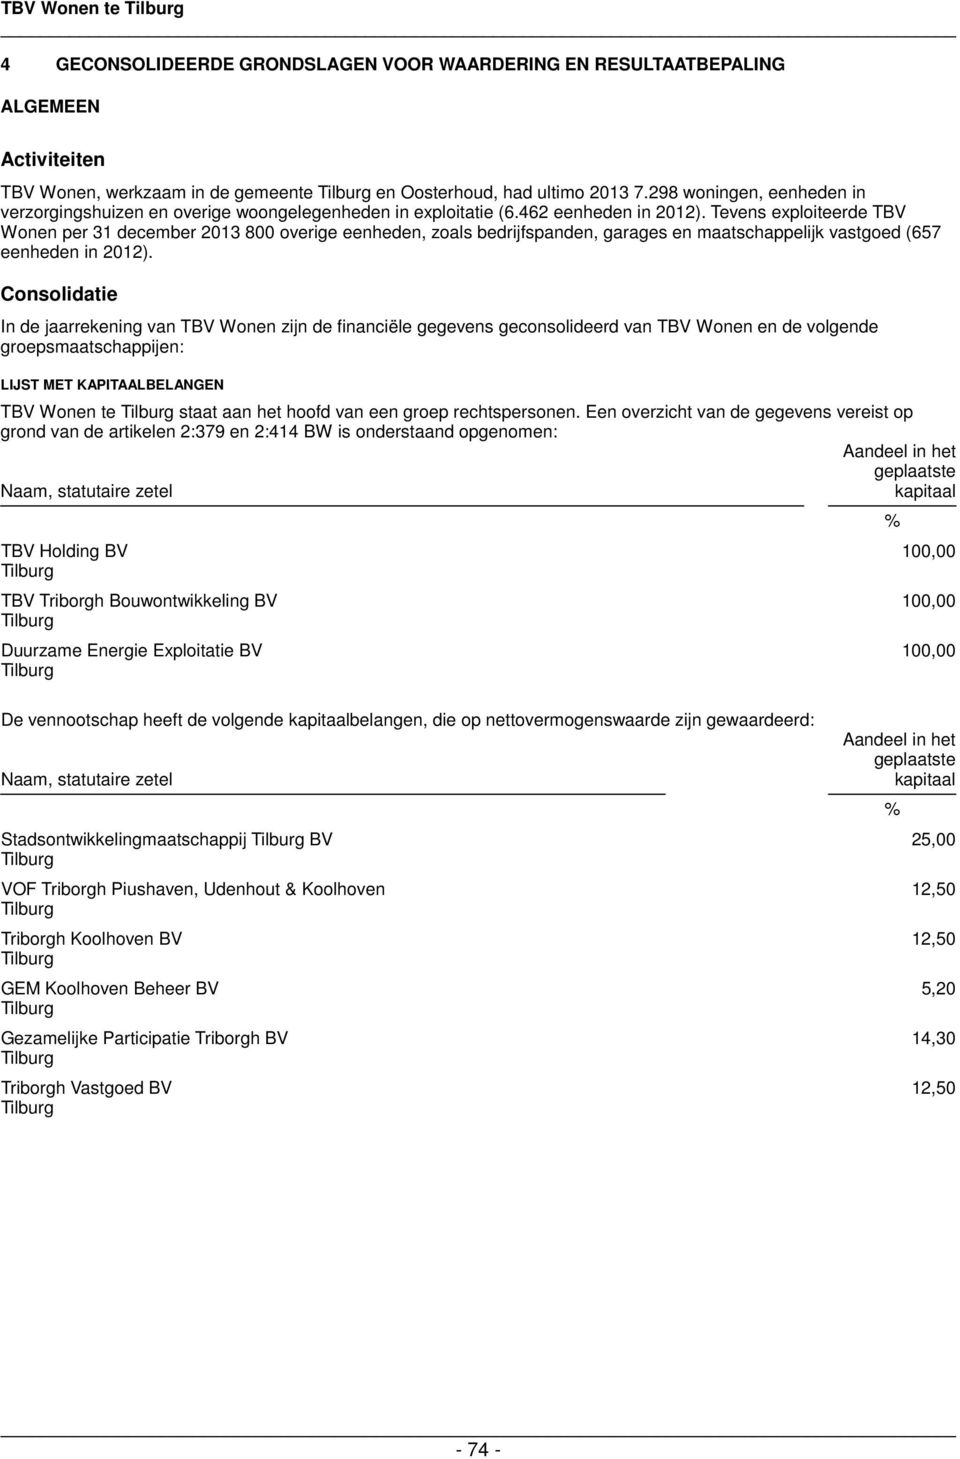 Tevens exploiteerde TBV Wonen per 31 december 2013 800 overige eenheden, zoals bedrijfspanden, garages en maatschappelijk vastgoed (657 eenheden in 2012).